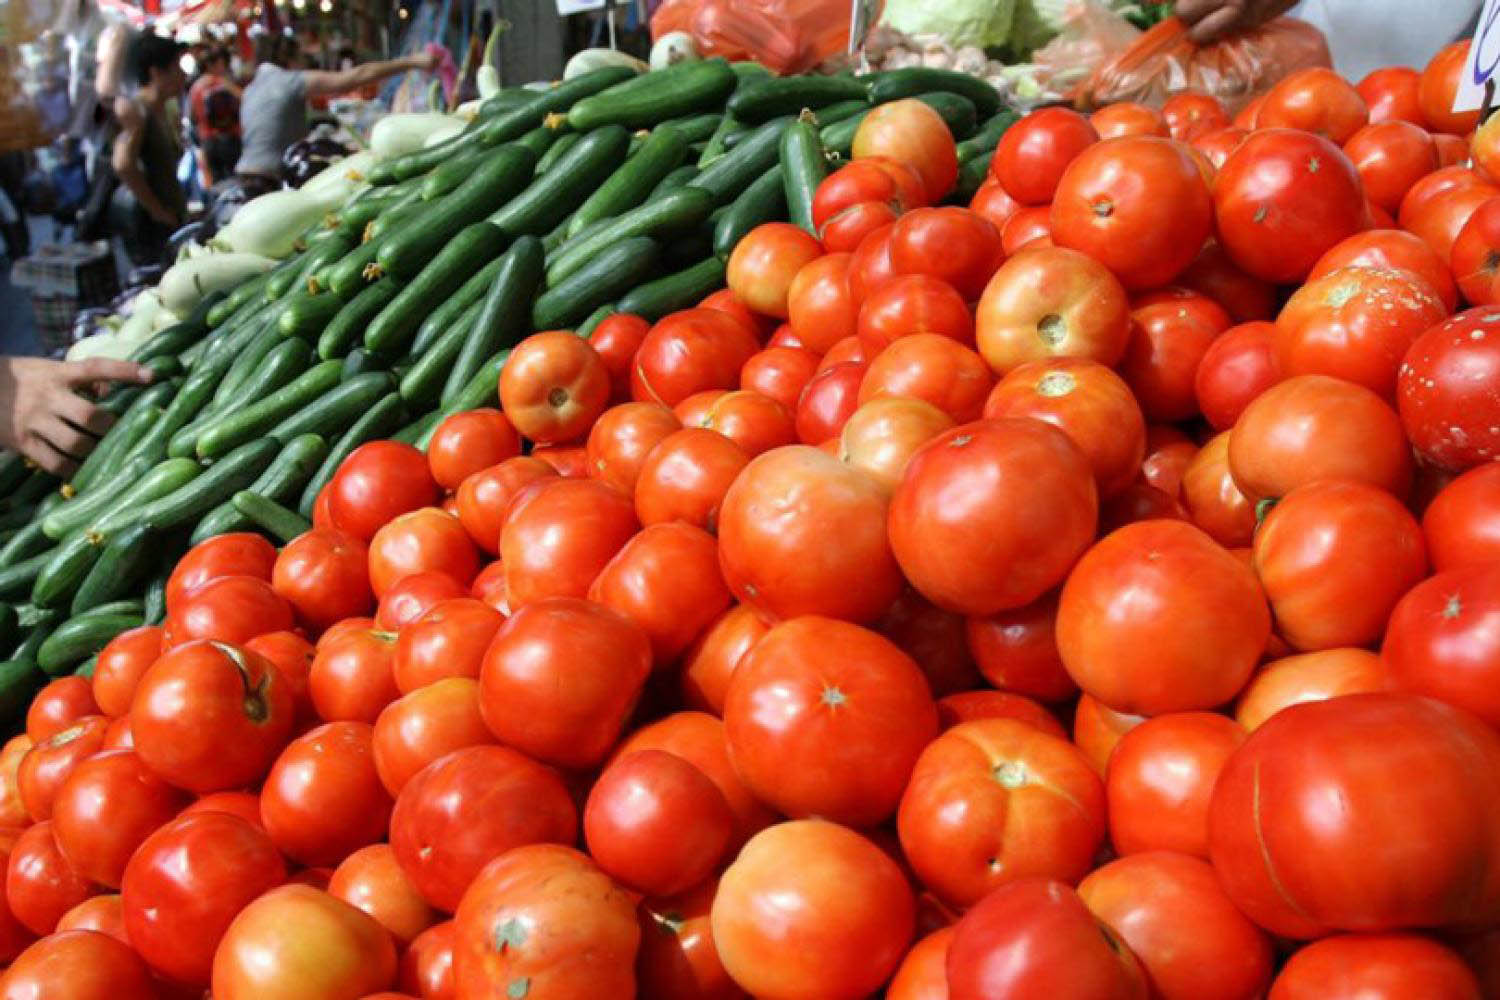 الطماطم بـ10 جنيهات.. الزراعة تعلن توفير الخضروات بأسعار مخفضة فى منافذها